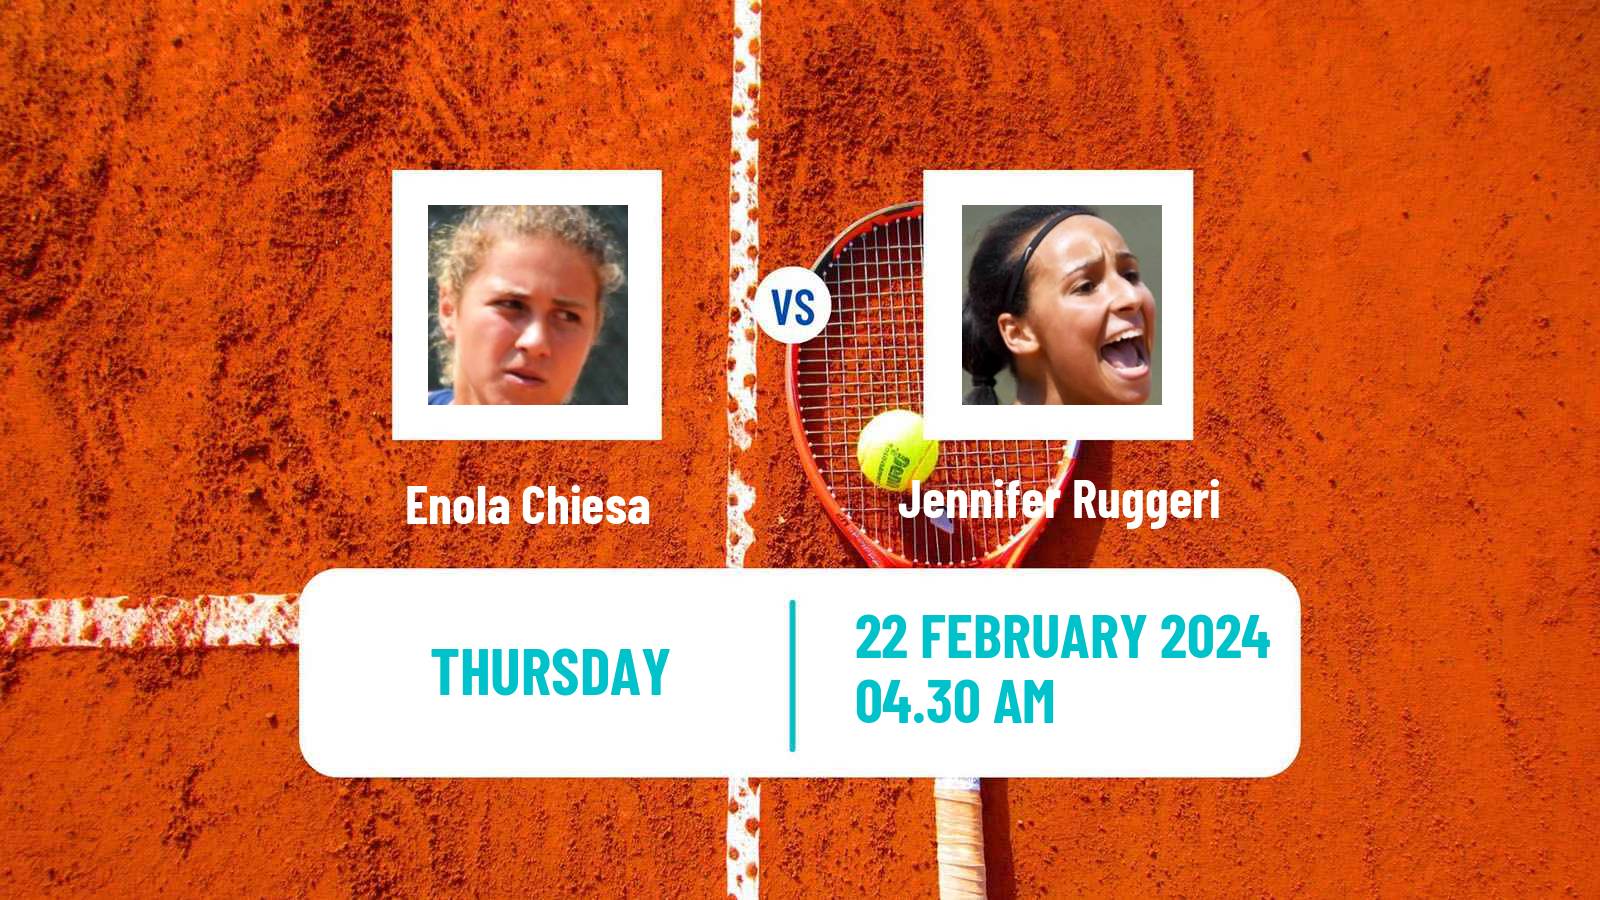 Tennis ITF W35 Hammamet 2 Women Enola Chiesa - Jennifer Ruggeri